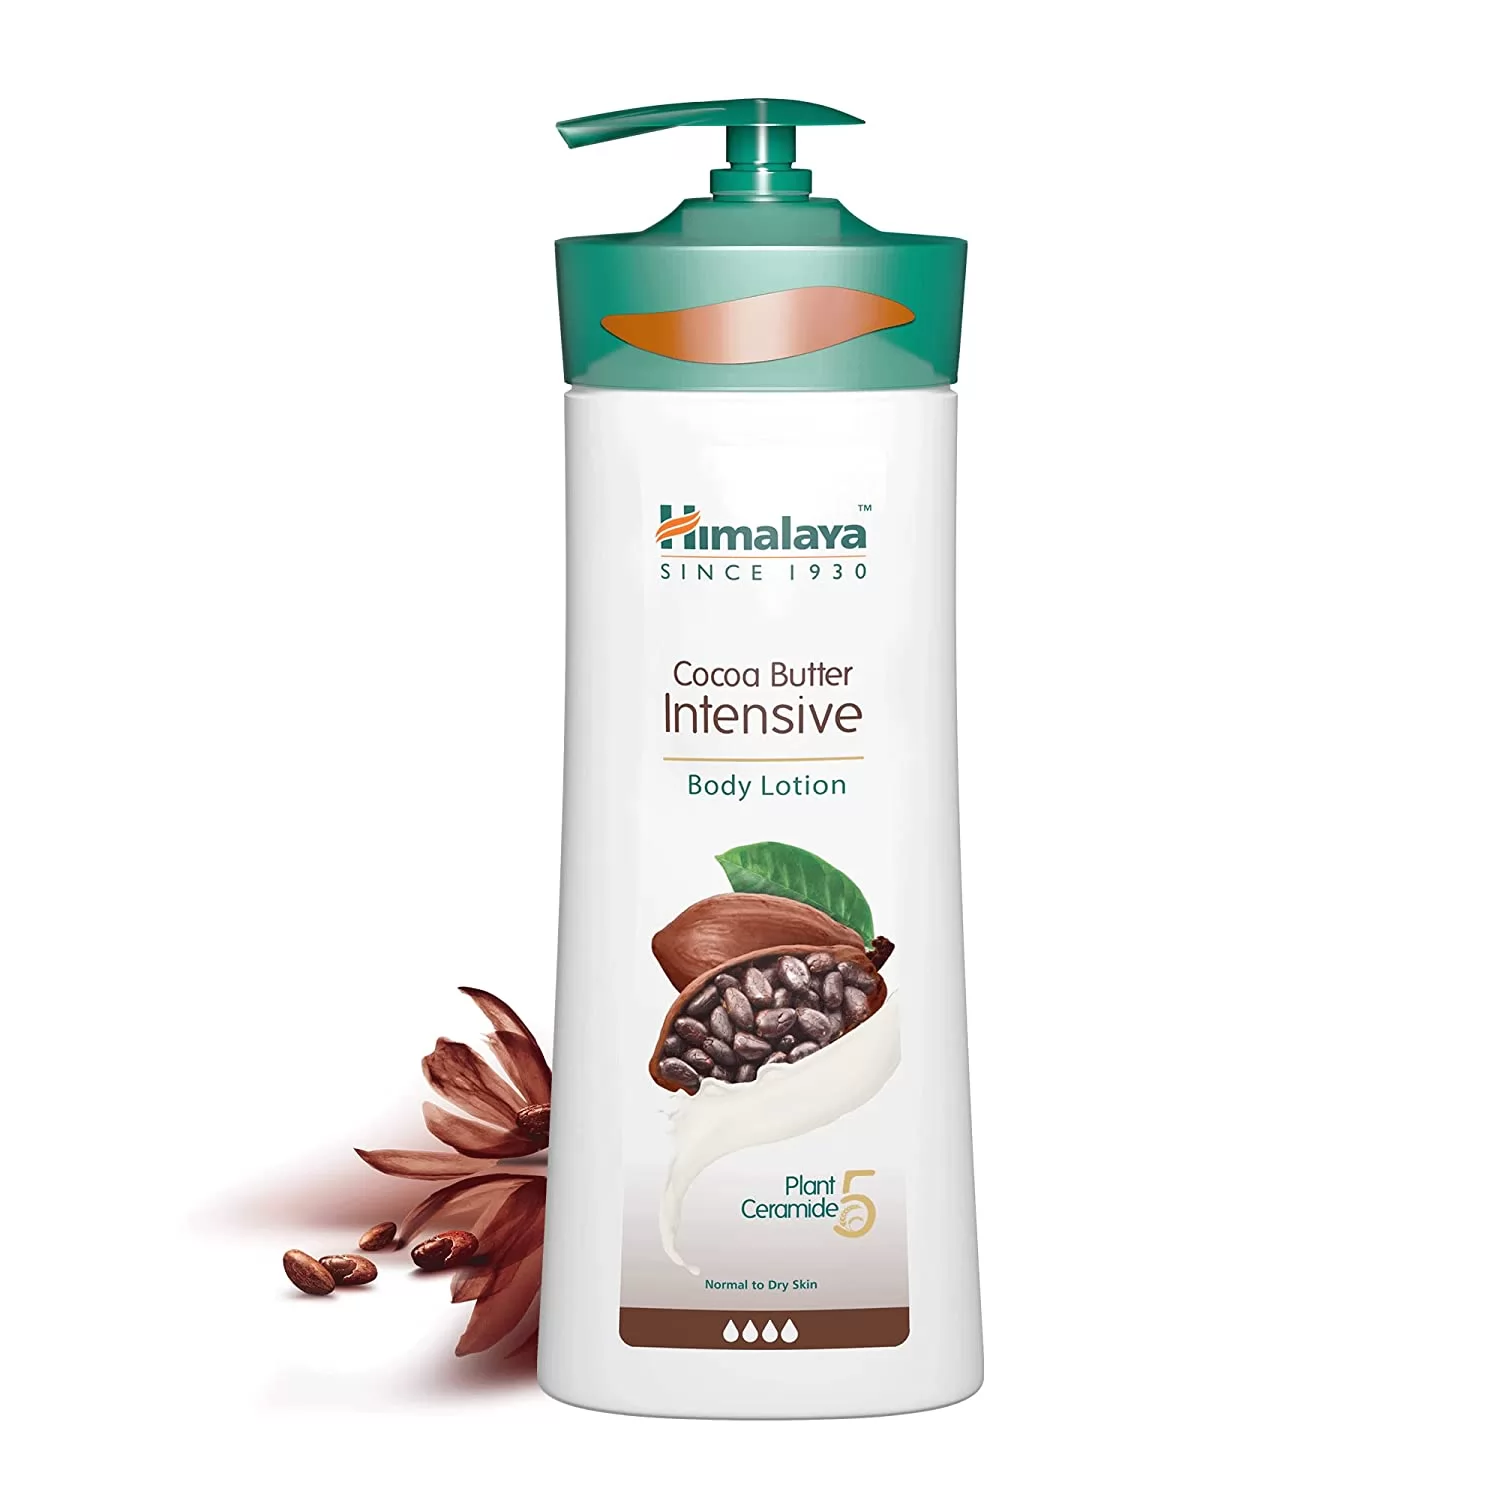 हिमालय हर्बल्स कोको बटर इंटेंसिव बॉडी लोशन (Himalaya Herbals Cocoa Butter Intensive Body Lotion)